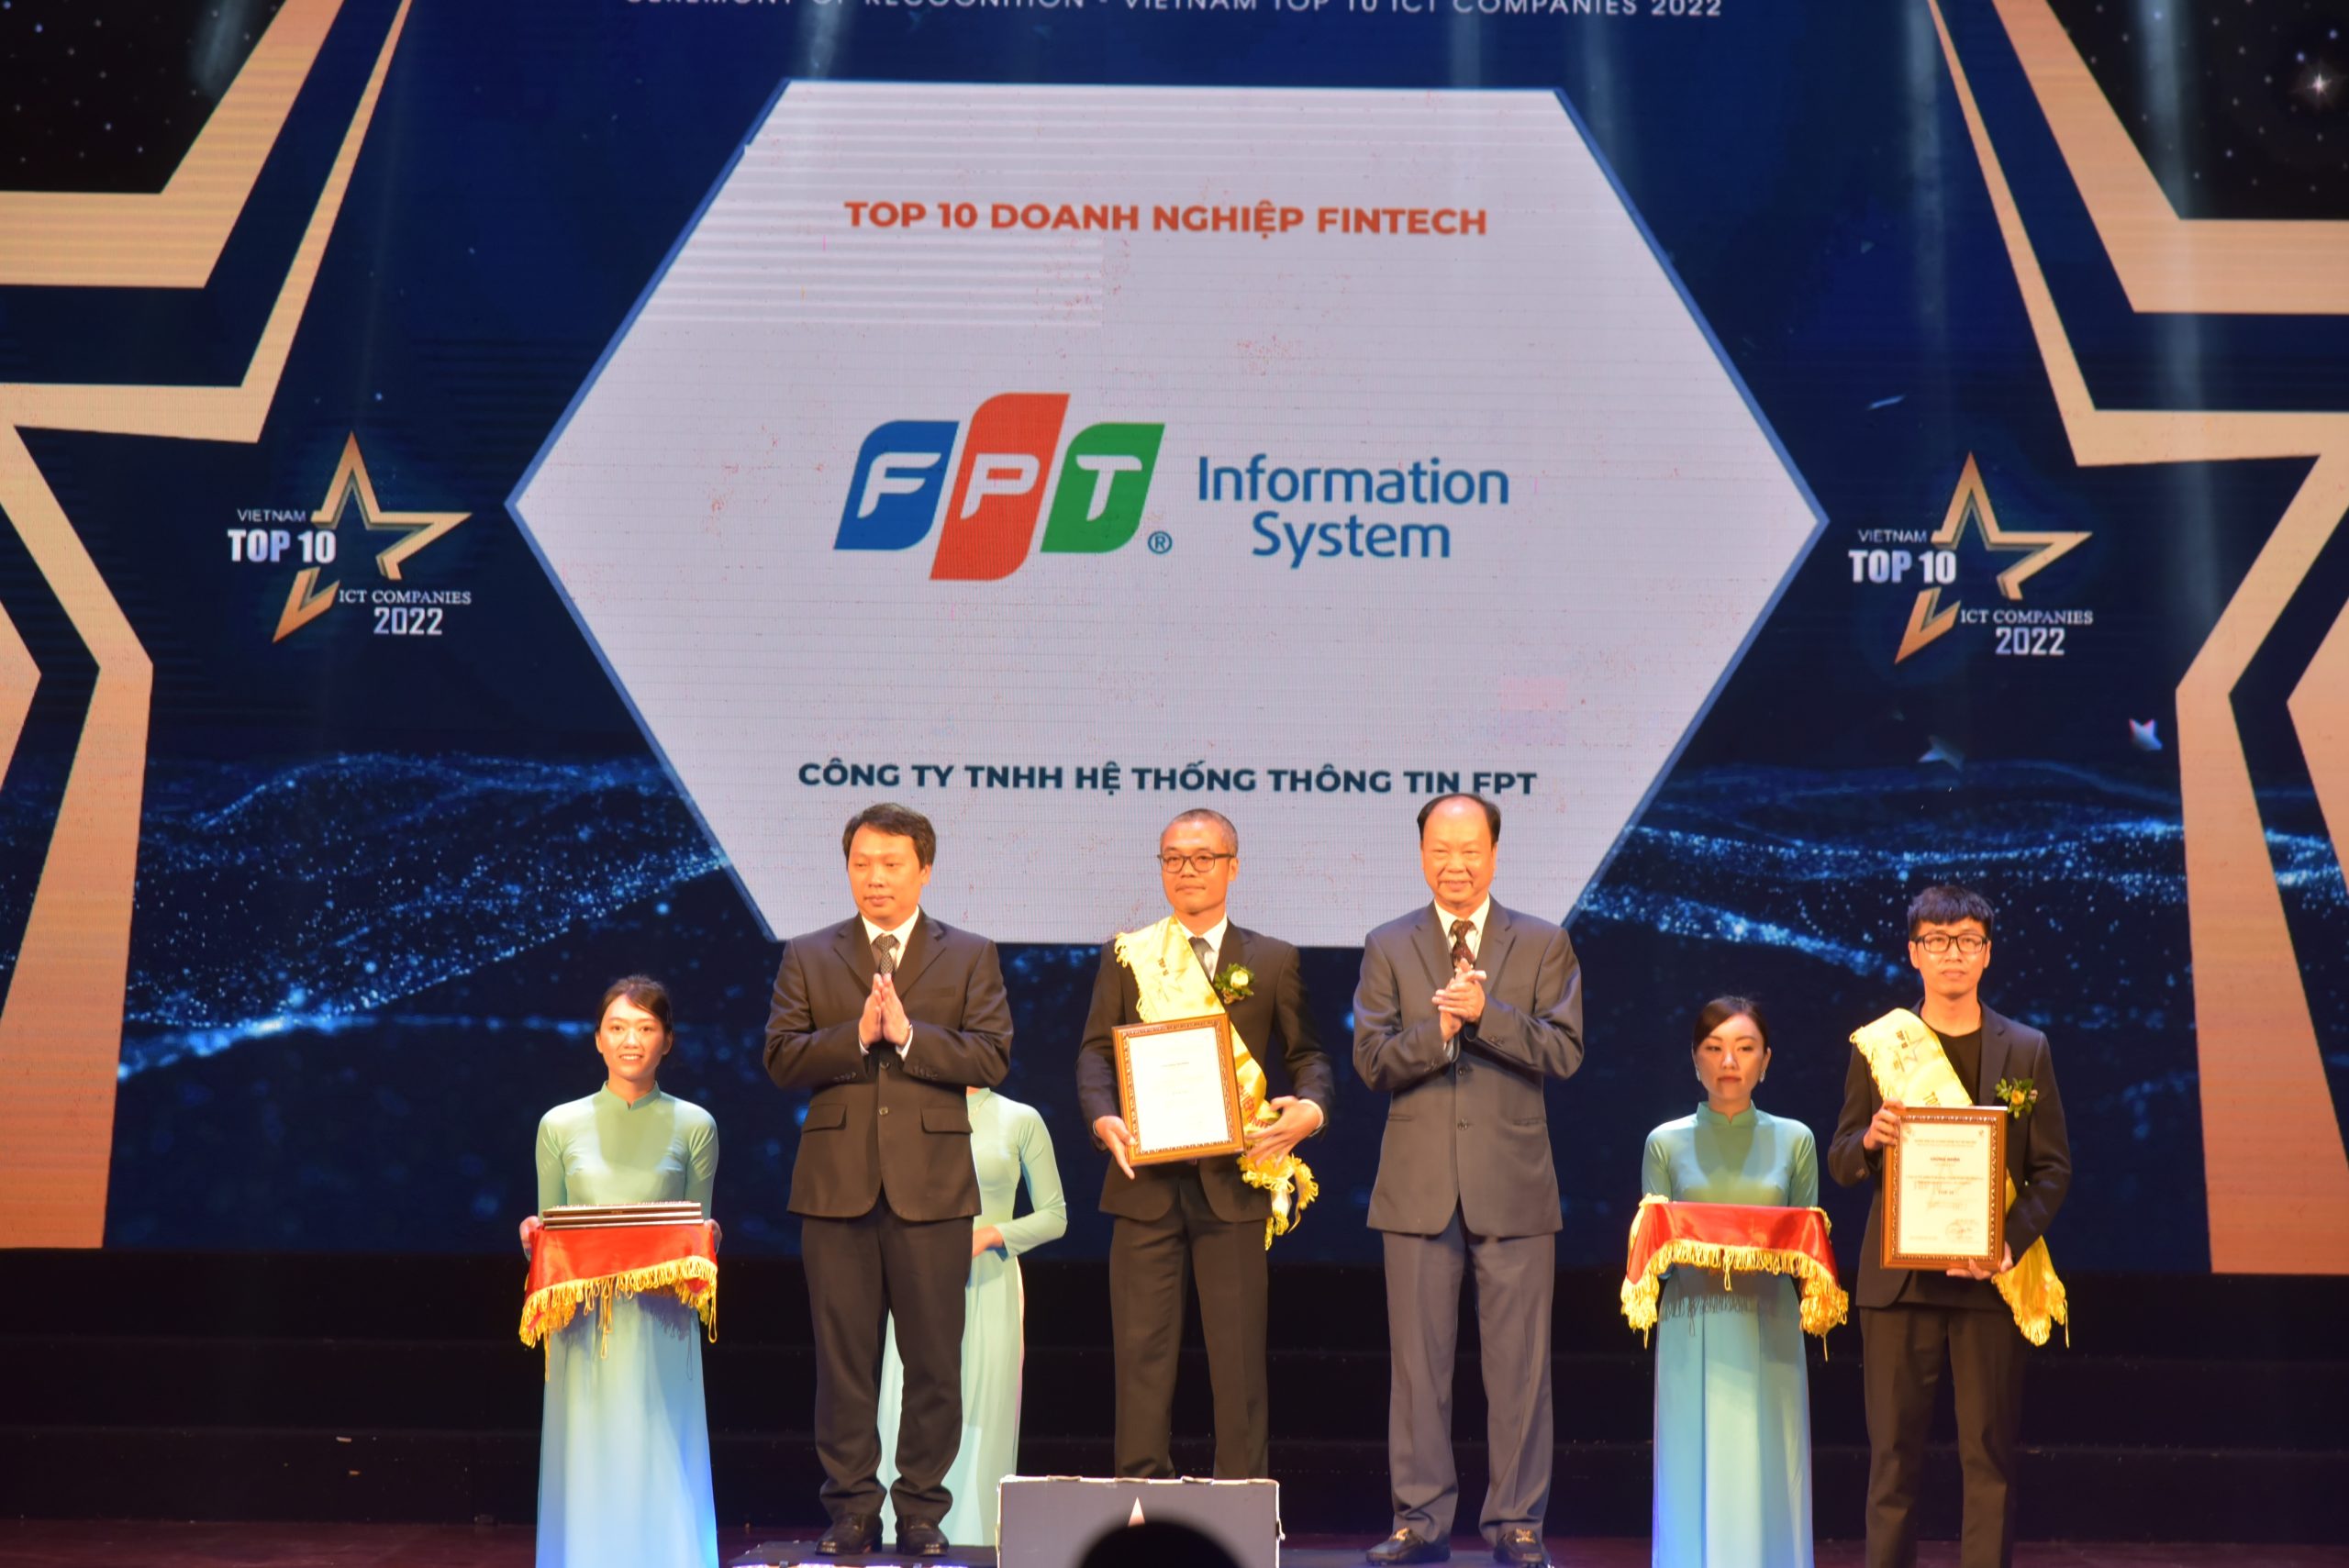 Top 10 FinTech Companies in Vietnam 2022